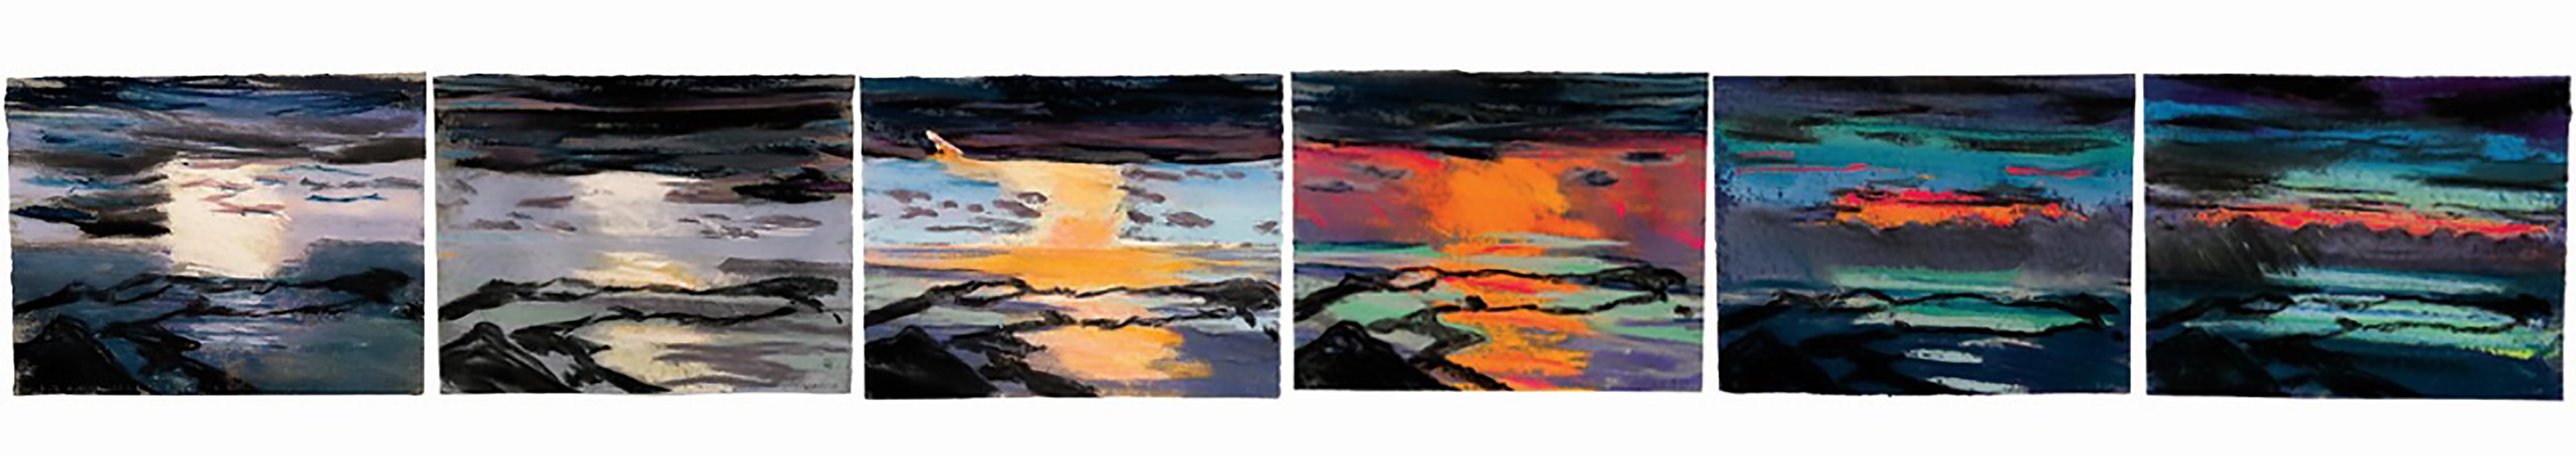 Christian Brechneff Landscape Art - Pic Paradis Sunset Pastel Series 17, nature, landscape, colorful